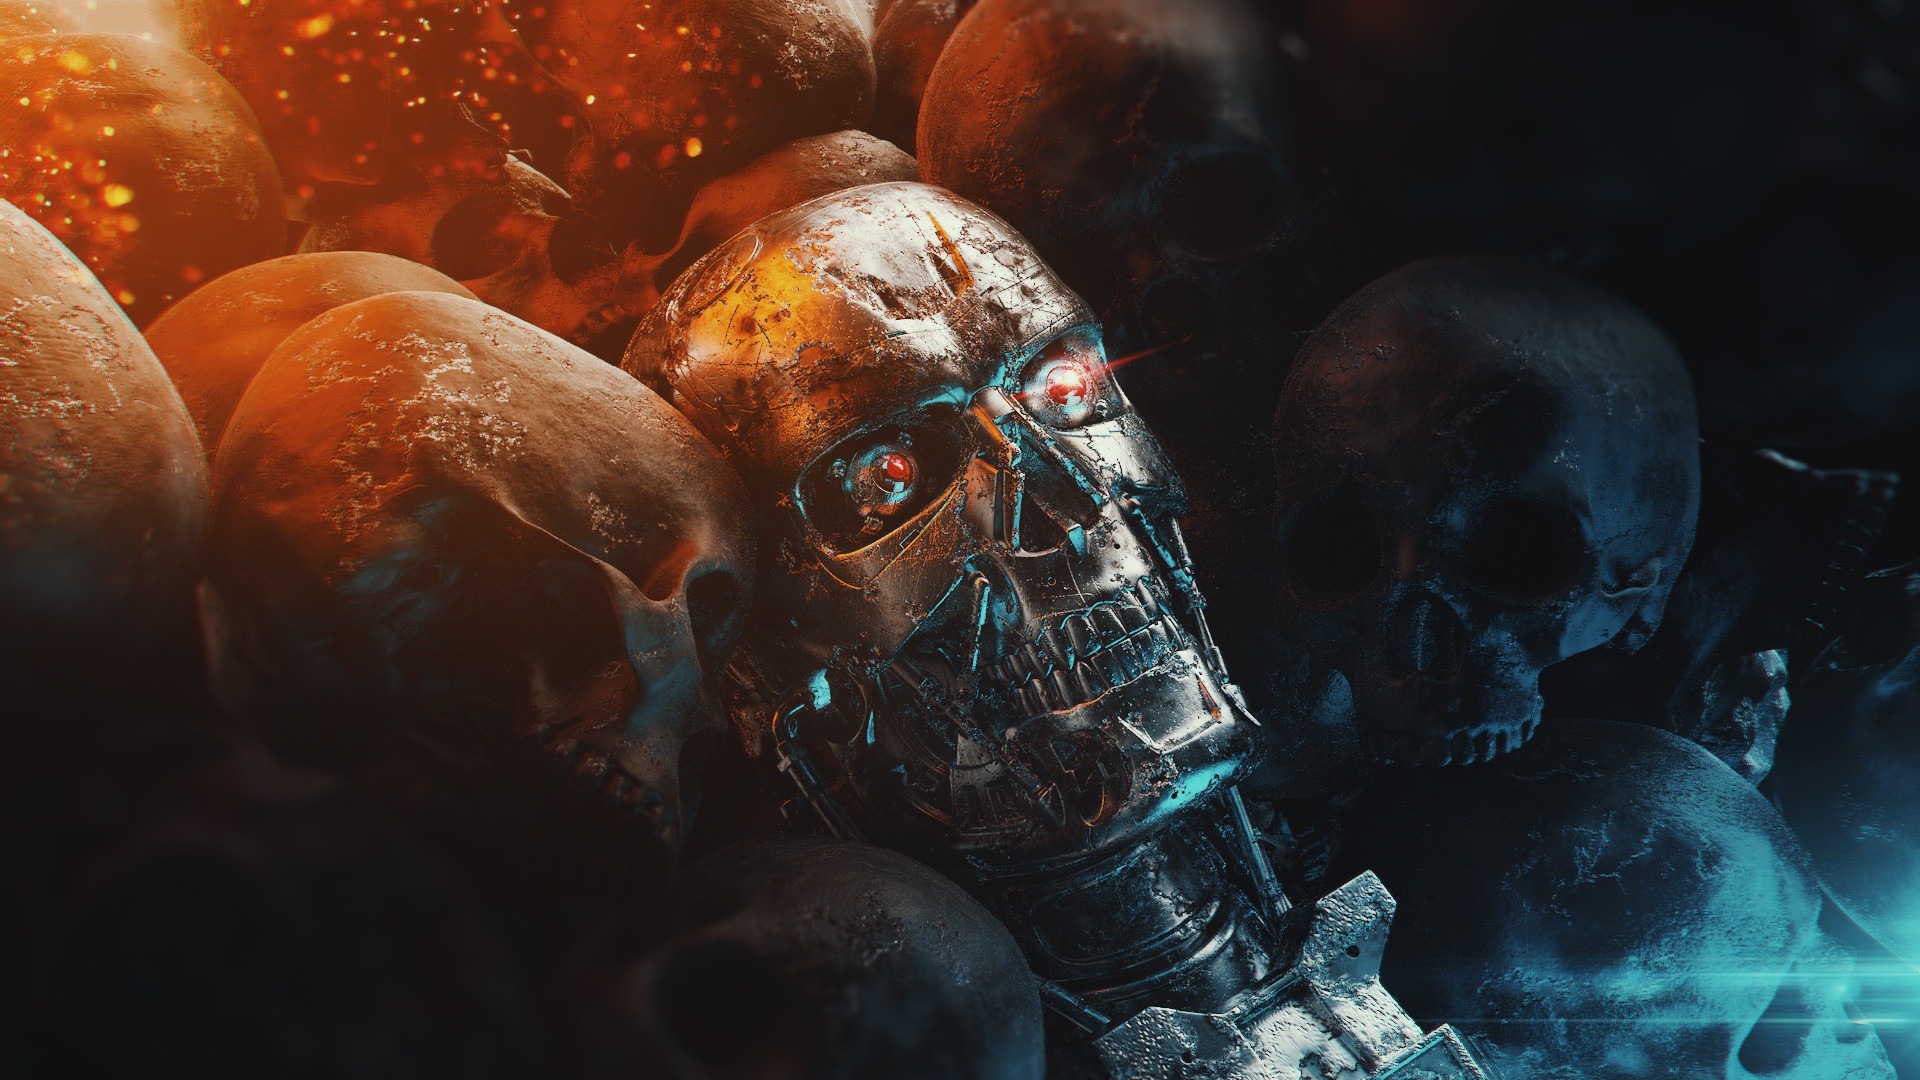 General 1920x1080 skull endoskeleton cyborg Terminator apocalyptic futuristic